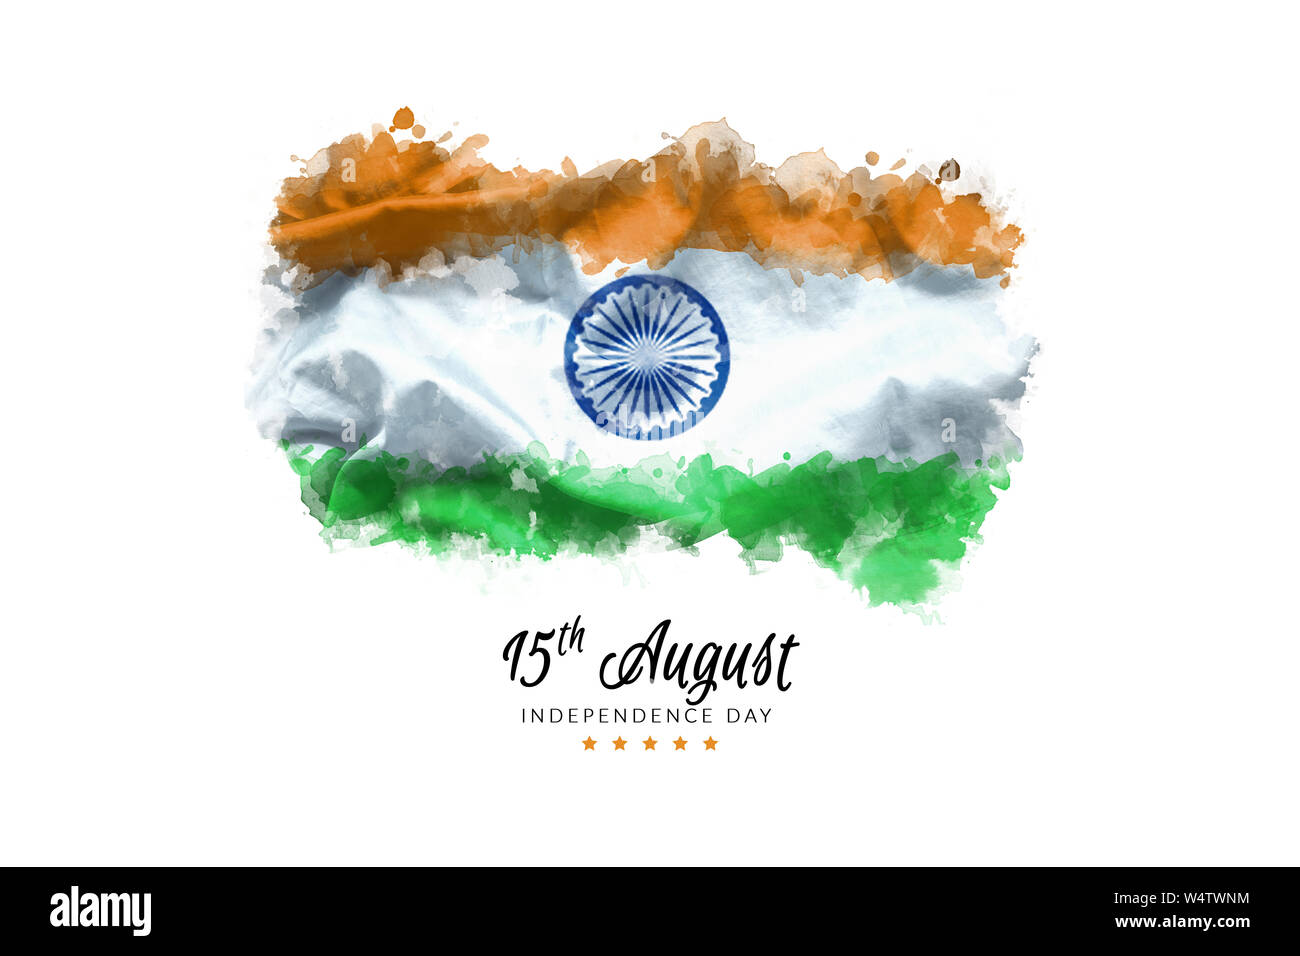 Célébrer la Journée de l'indépendance de l'Inde carte de souhaits avec Affaires indiennes waving flag grunge par couleur de fond de l'eau peinture. abstract background, affiche, Banque D'Images